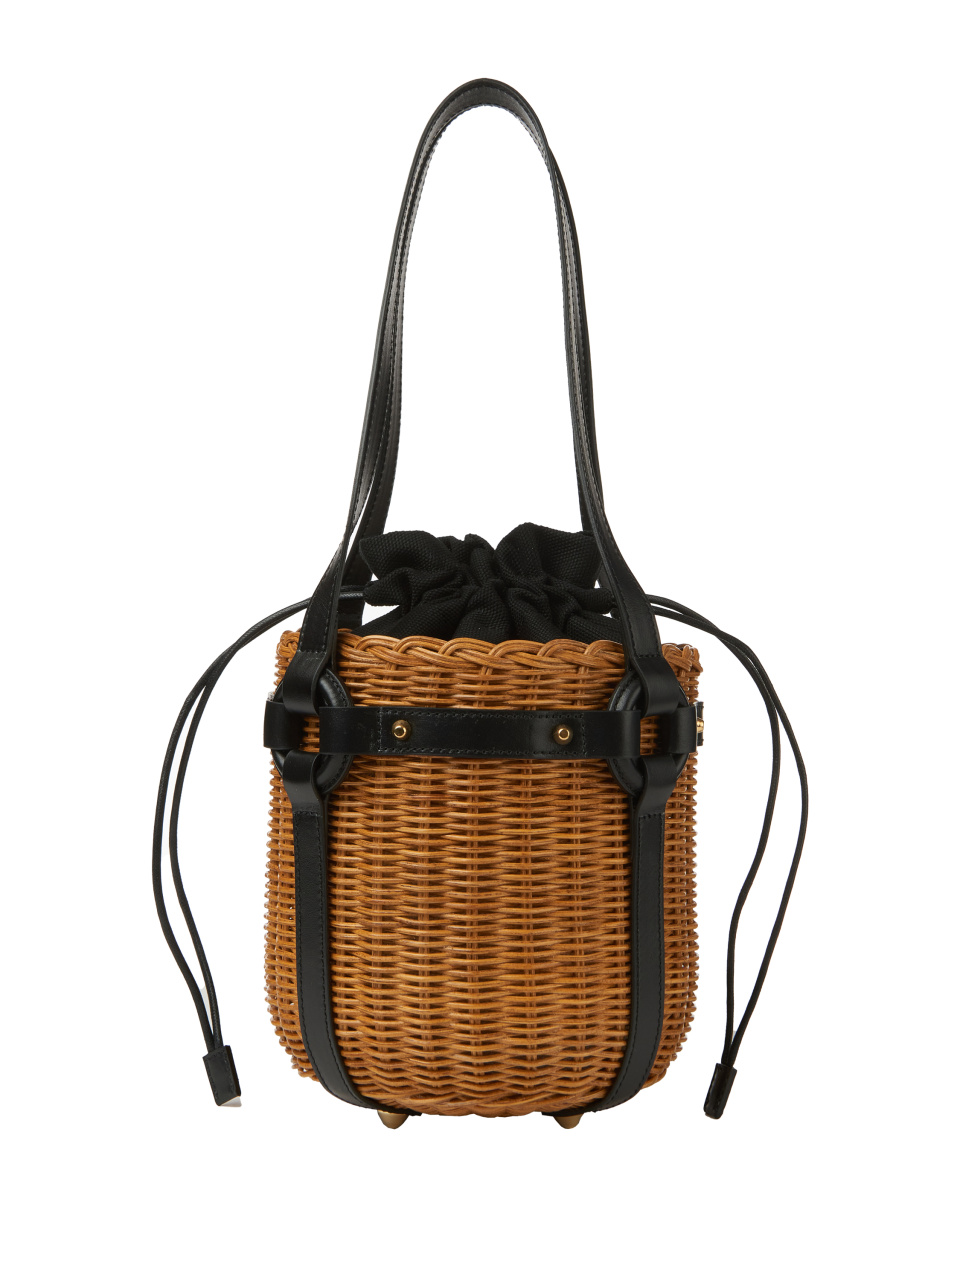 Плетеная сумка-ведро с черной кожаной отделкой, 1